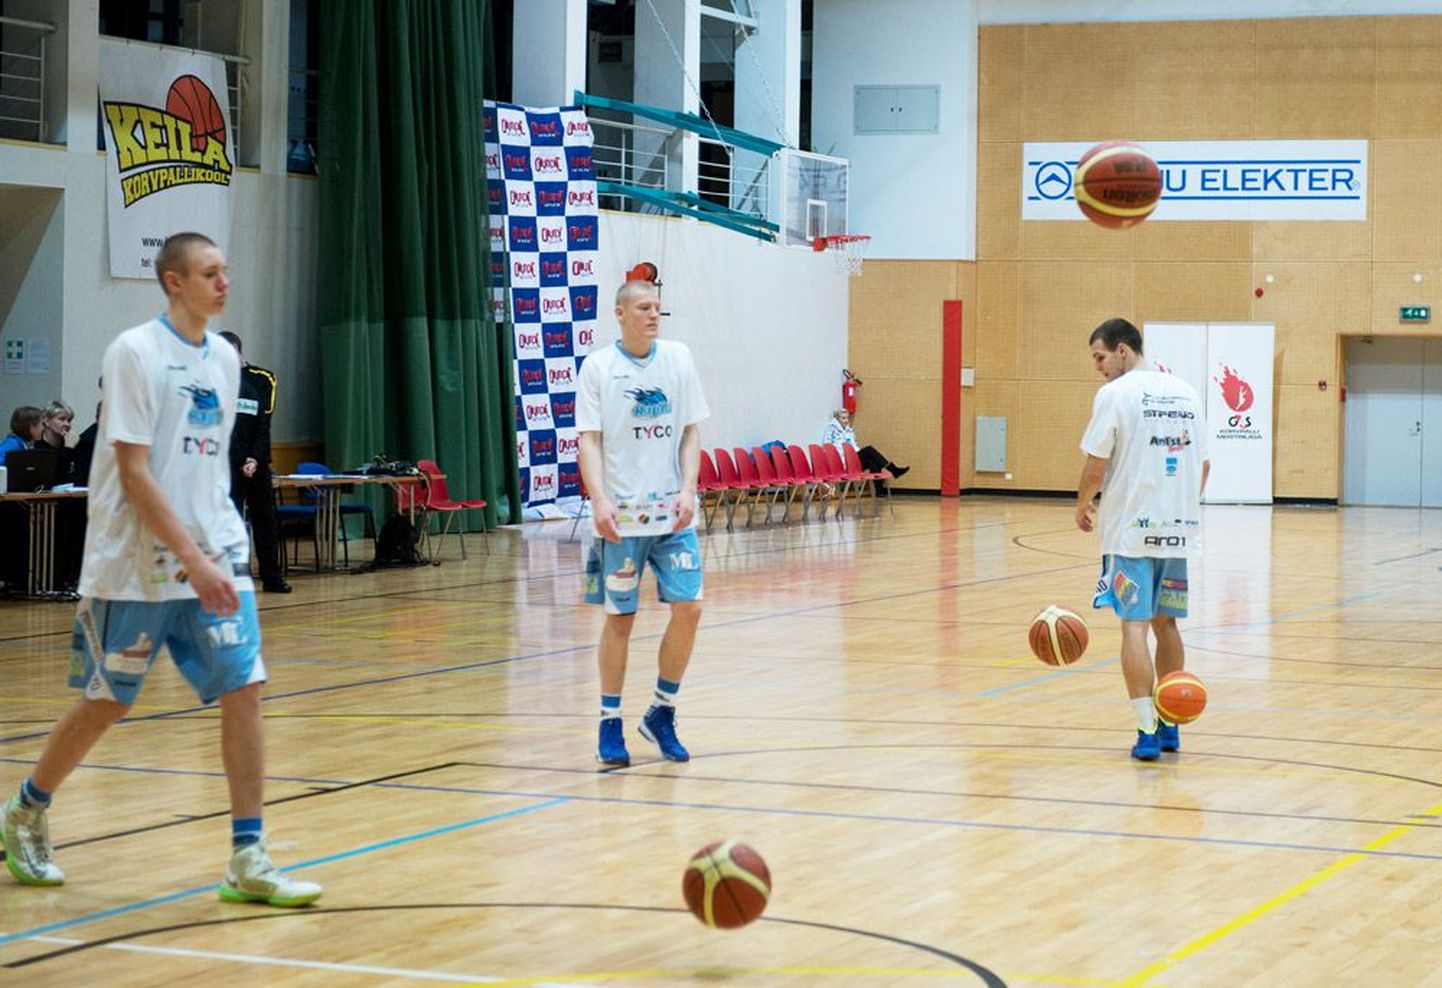 Rapla TYCO noored mängumehed (vasakult) Rauno Nurger, Martin Jurtom ja Martin Paasoja pole suutnud veel päris põhitegijateks saada.